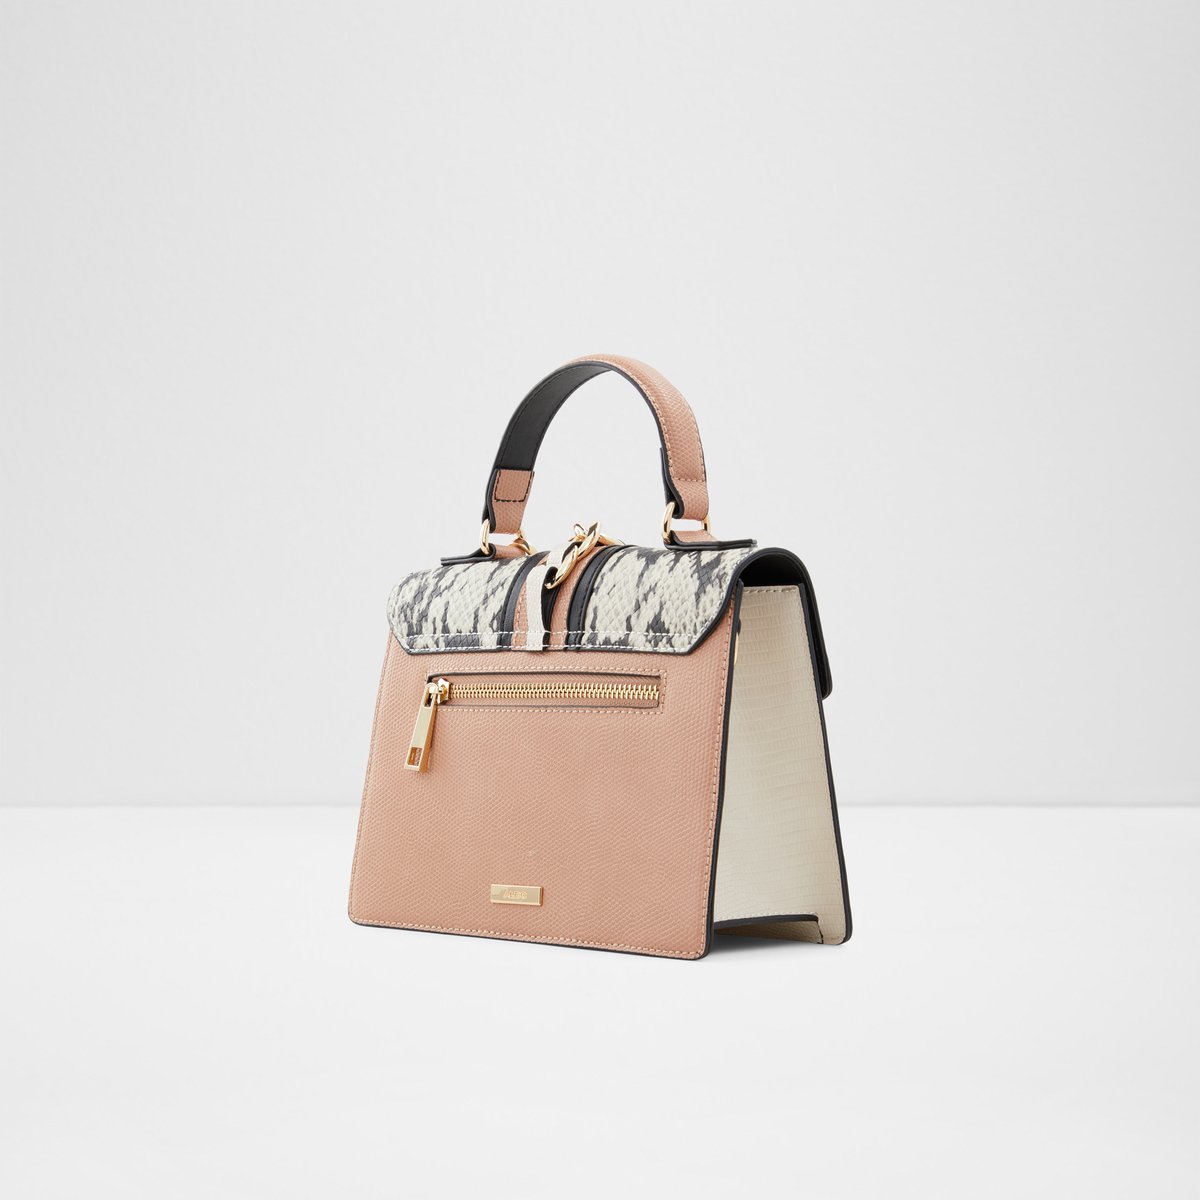 Buy Bone Multi Handbags for Women by ALDO Online